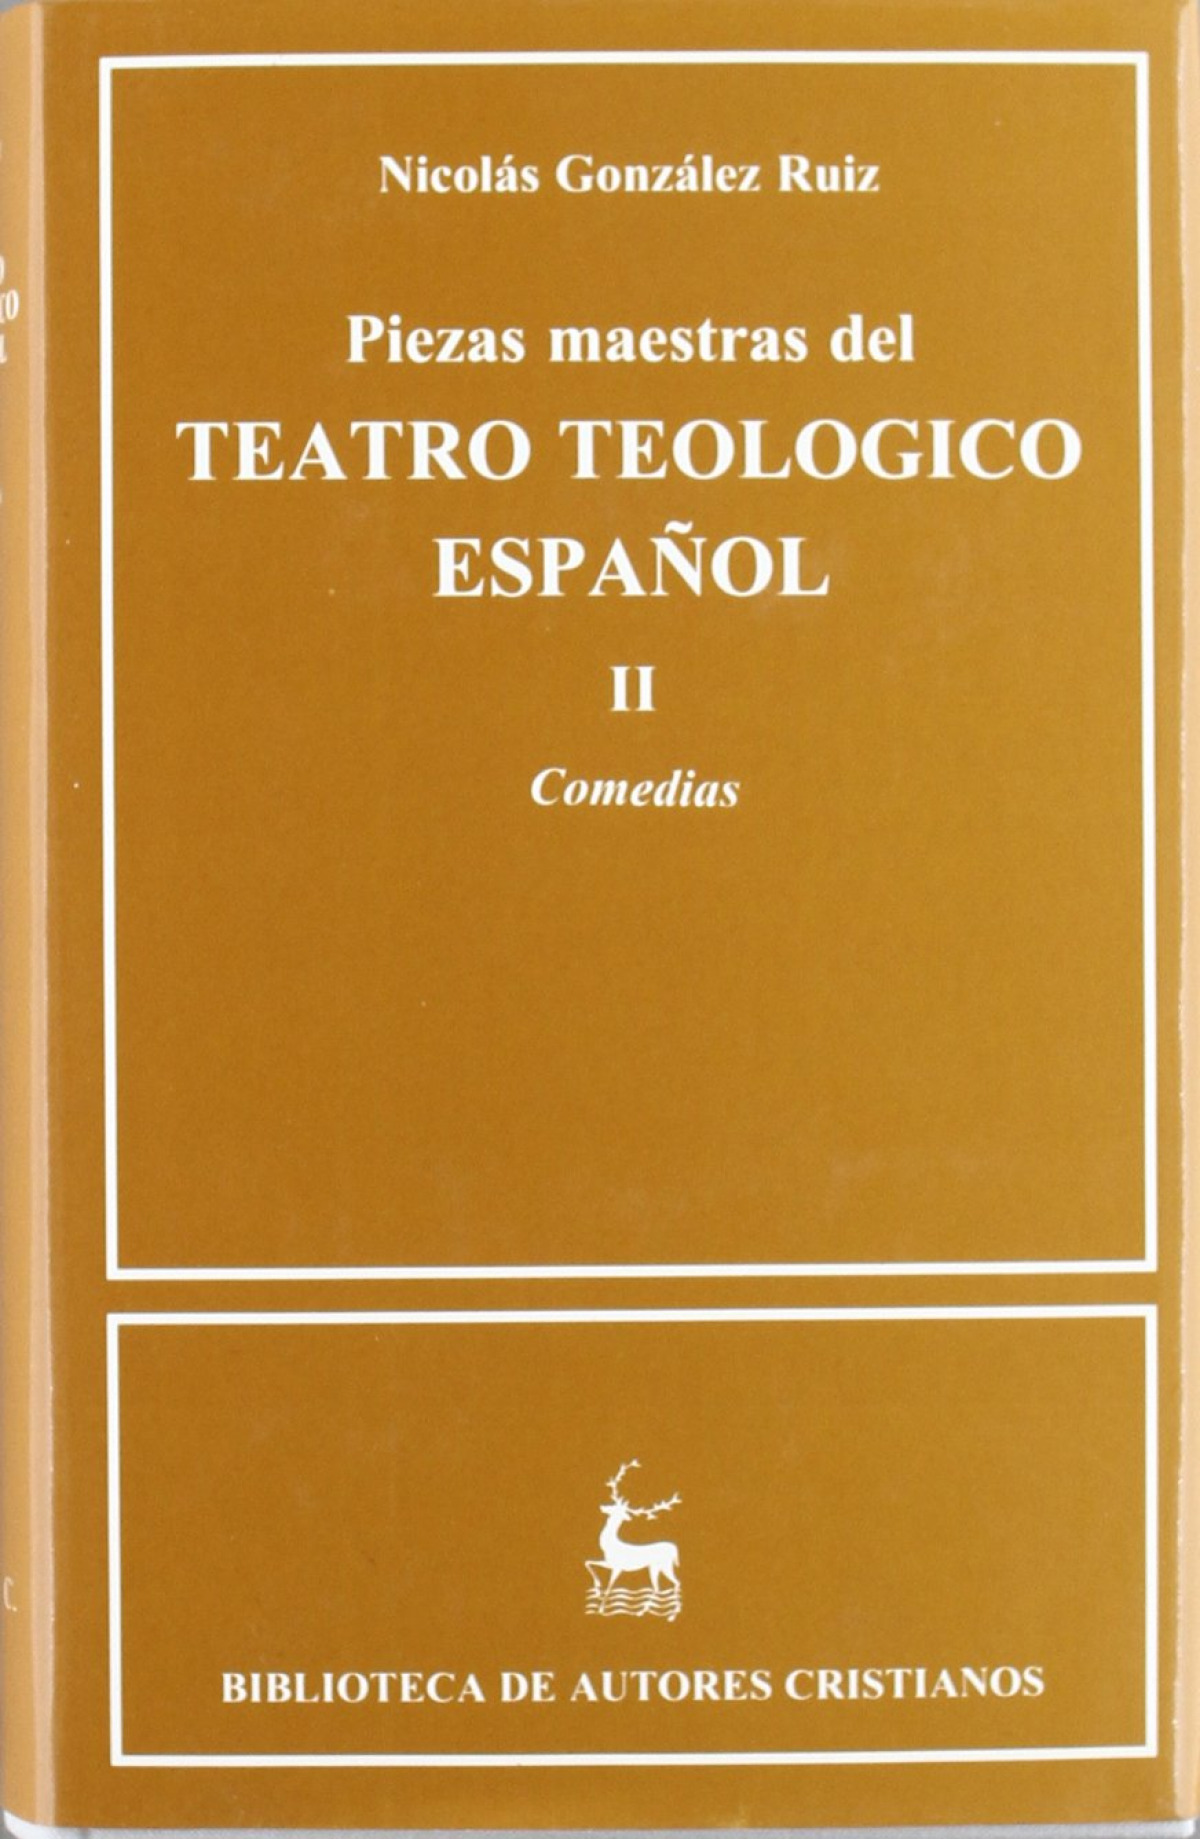 II.piezas maestras del teatro teológico español. comedias - González Ruiz, Nicolás